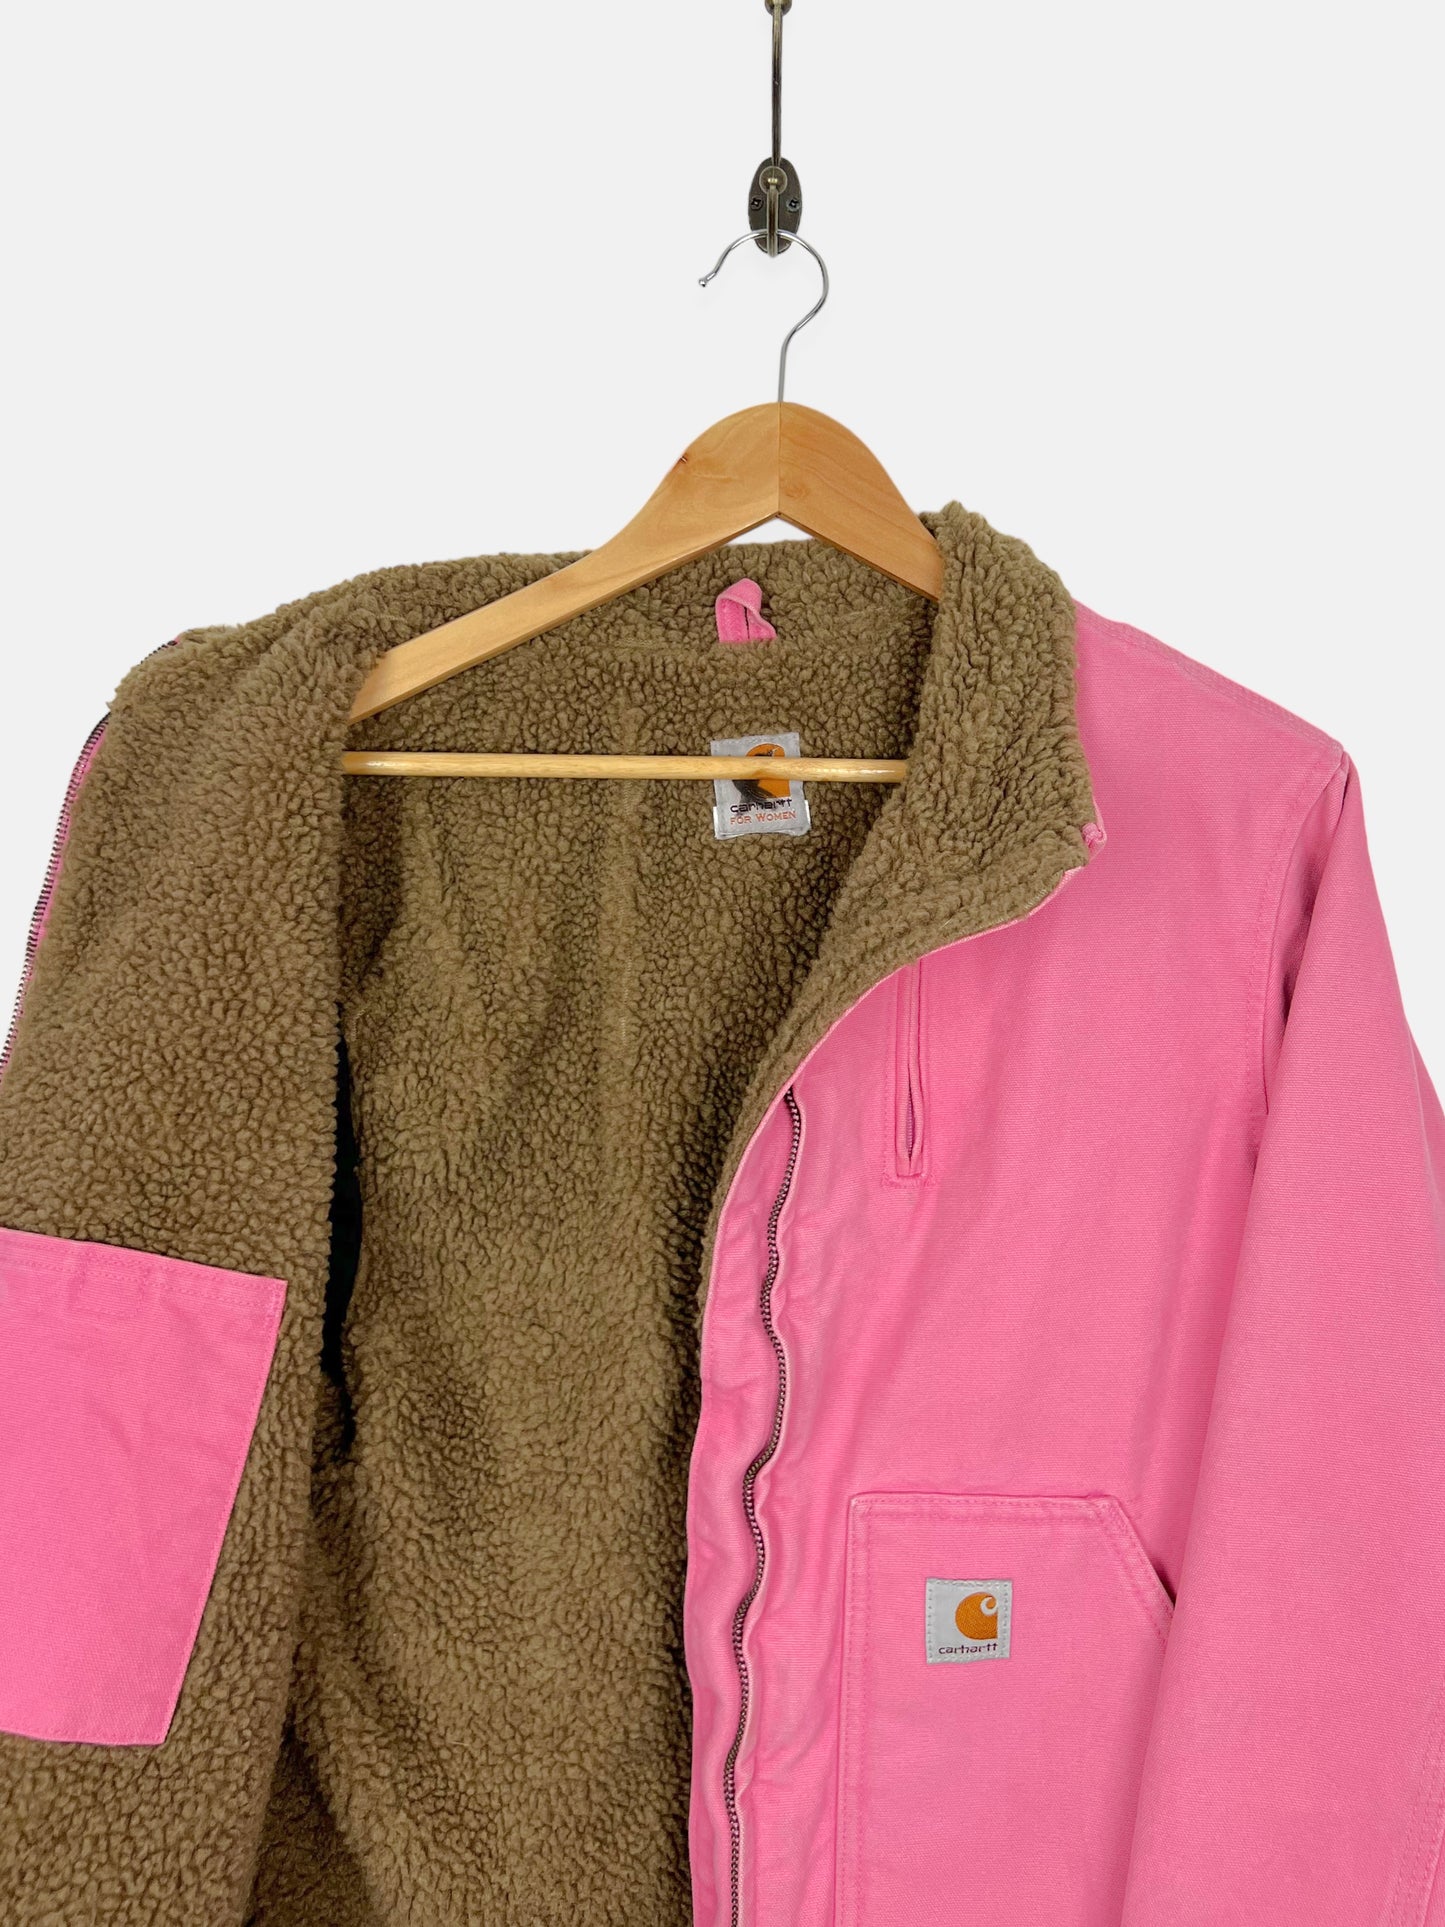 90's Carhartt Heavy Duty Sherpa Lined Vintage Jacket Size 12-14